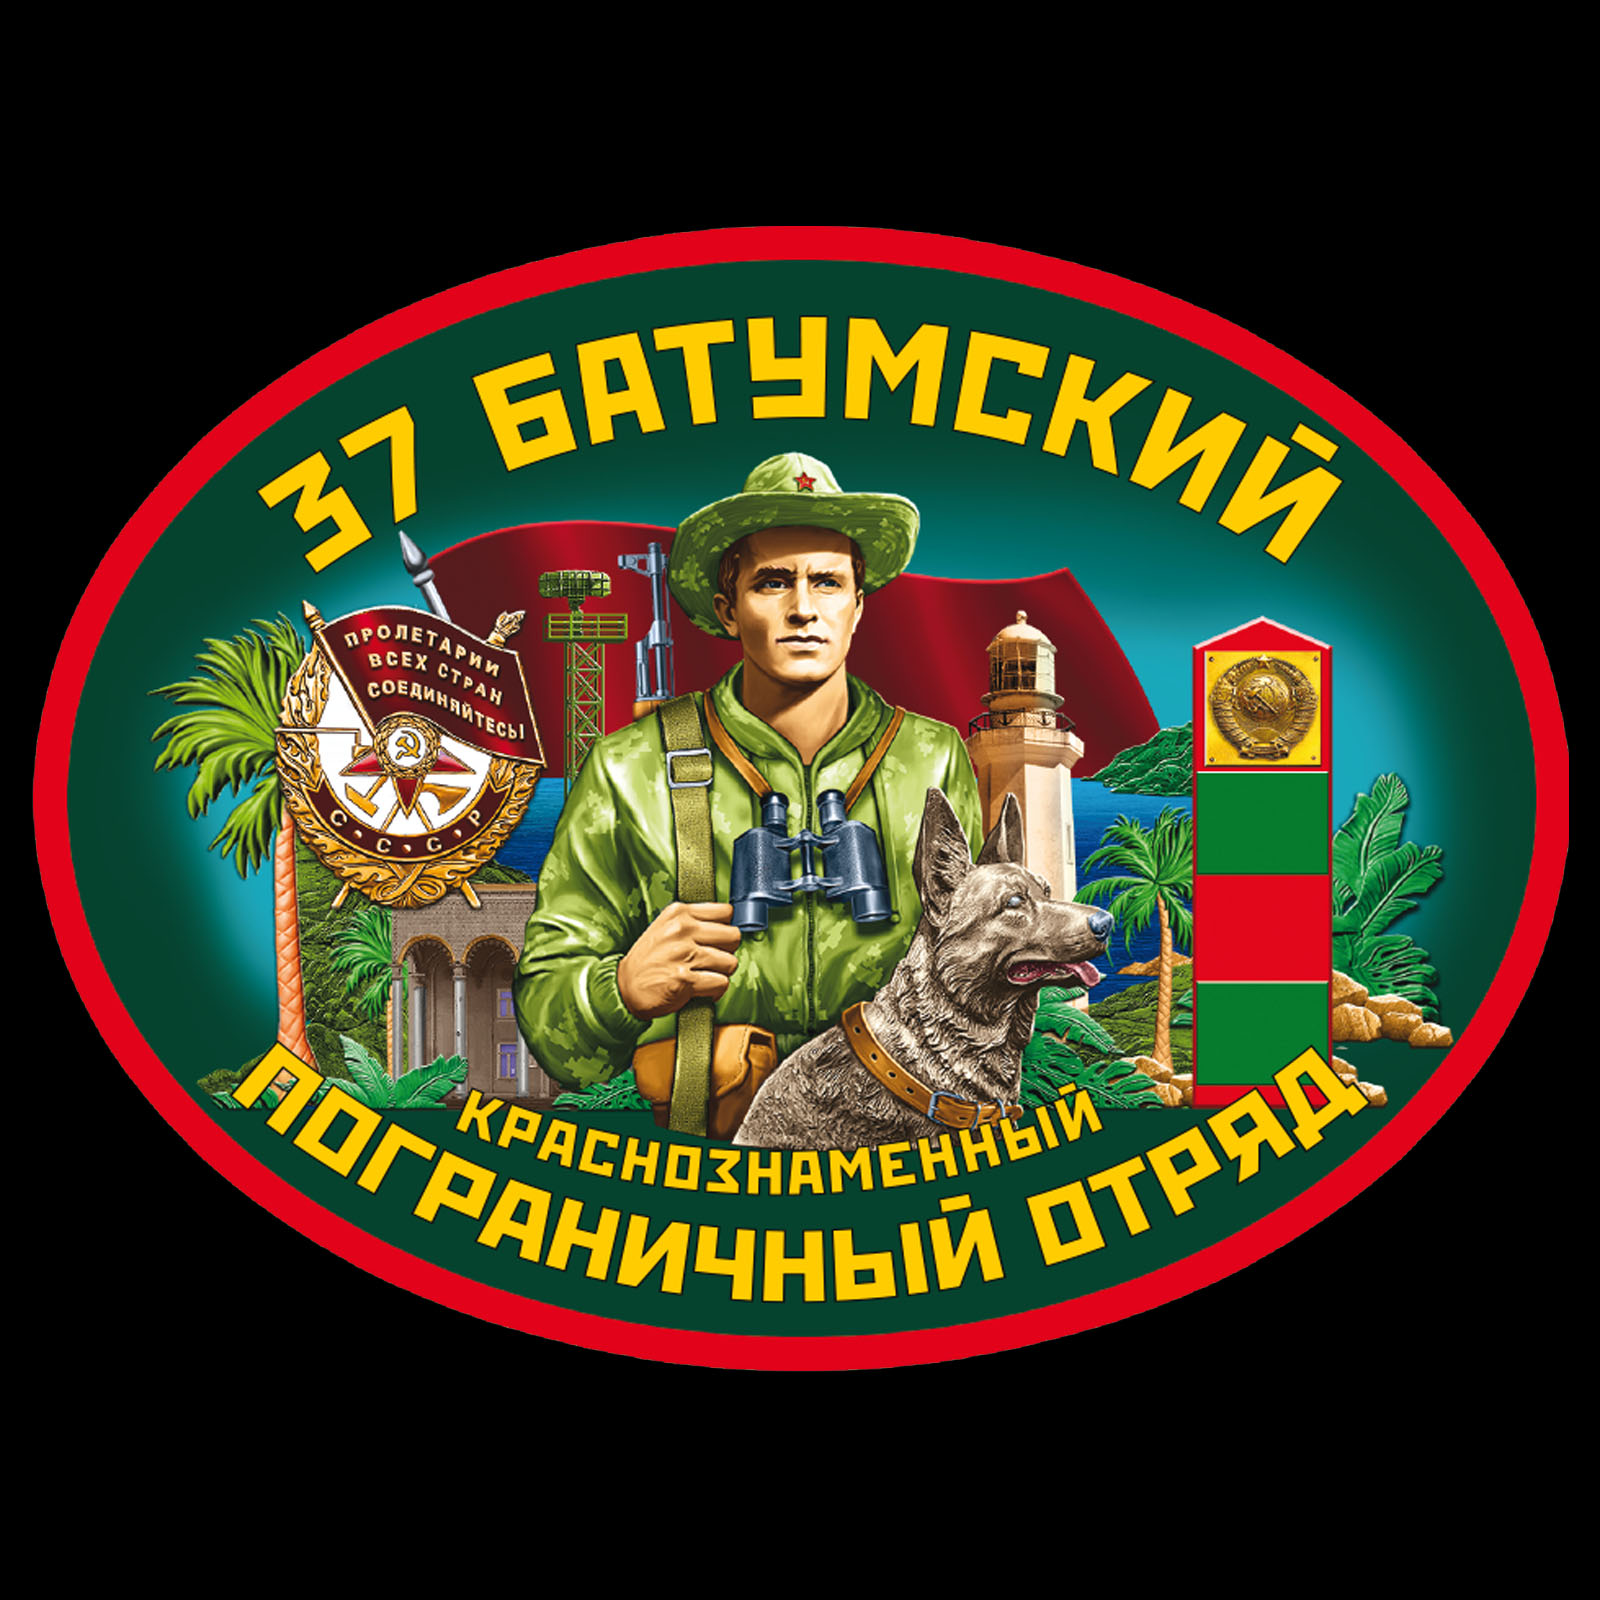 Чёрная футболка "37 Батумский пограничный отряд" 